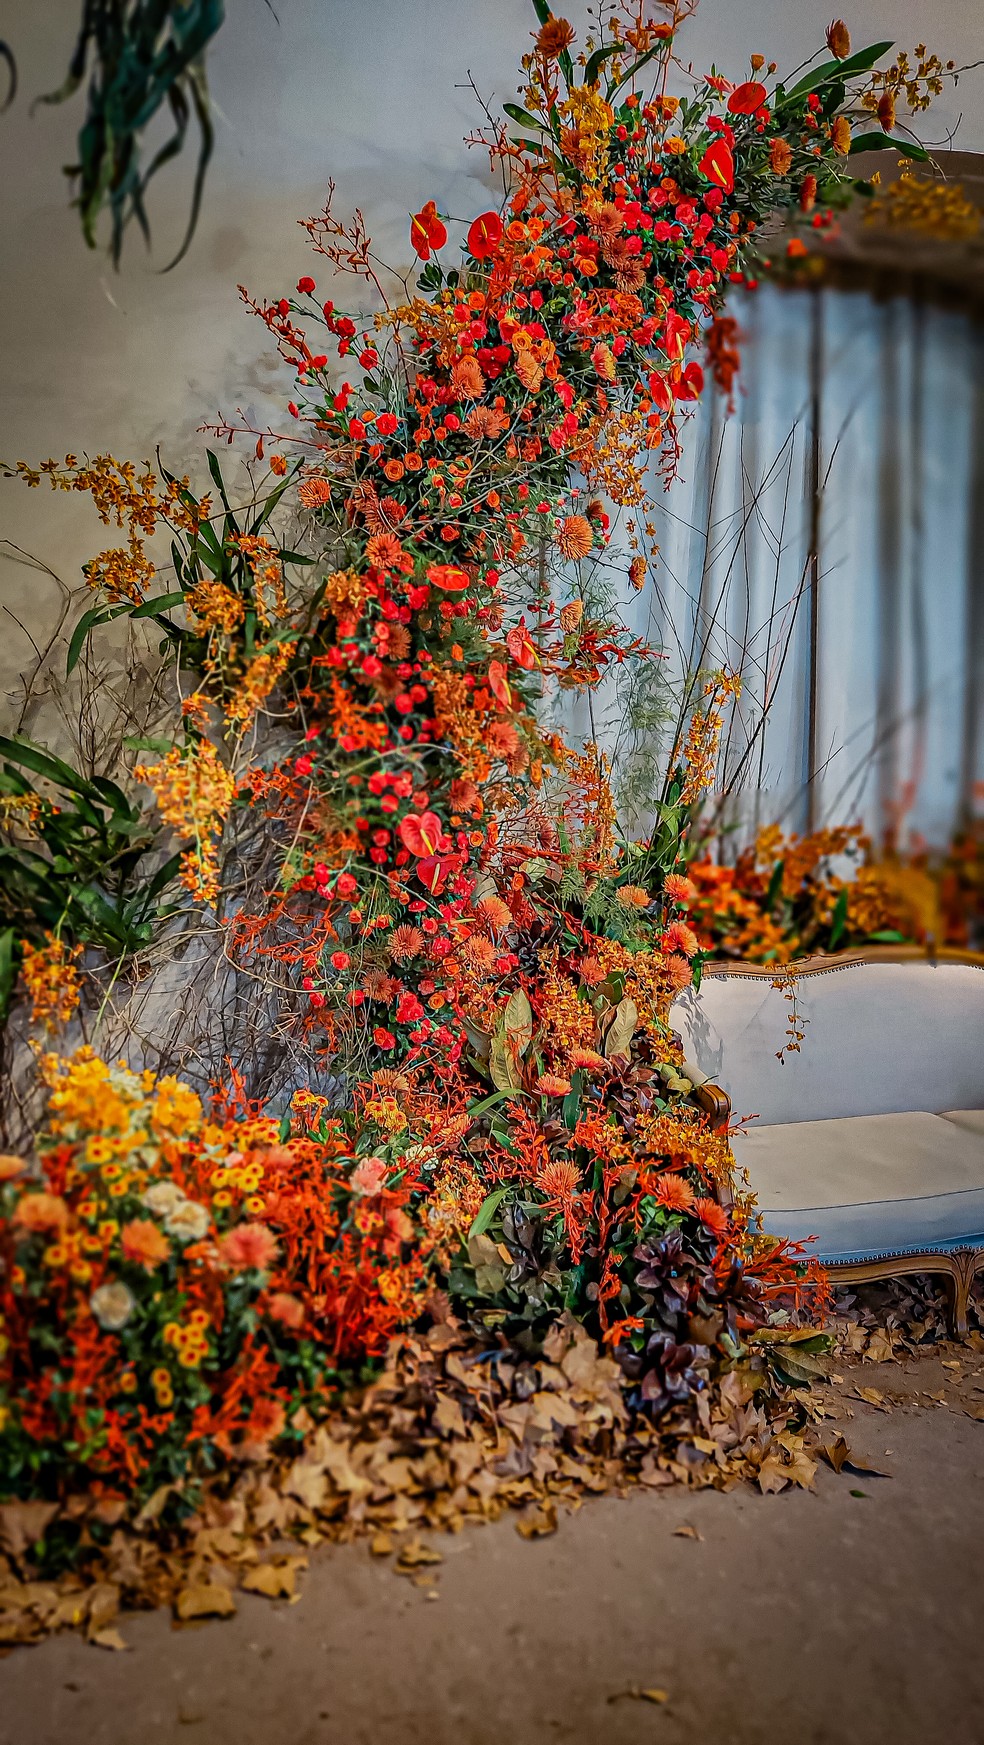 Um arco-íris floral, instalado na  rua das flores por Paulo Perissoto e Tanus Saab, exibe a diversidade de espécies e cores vibrantes. Um mostruário poético pra sentar, tomar um chá  e apreciar.  — Foto: João Barboza